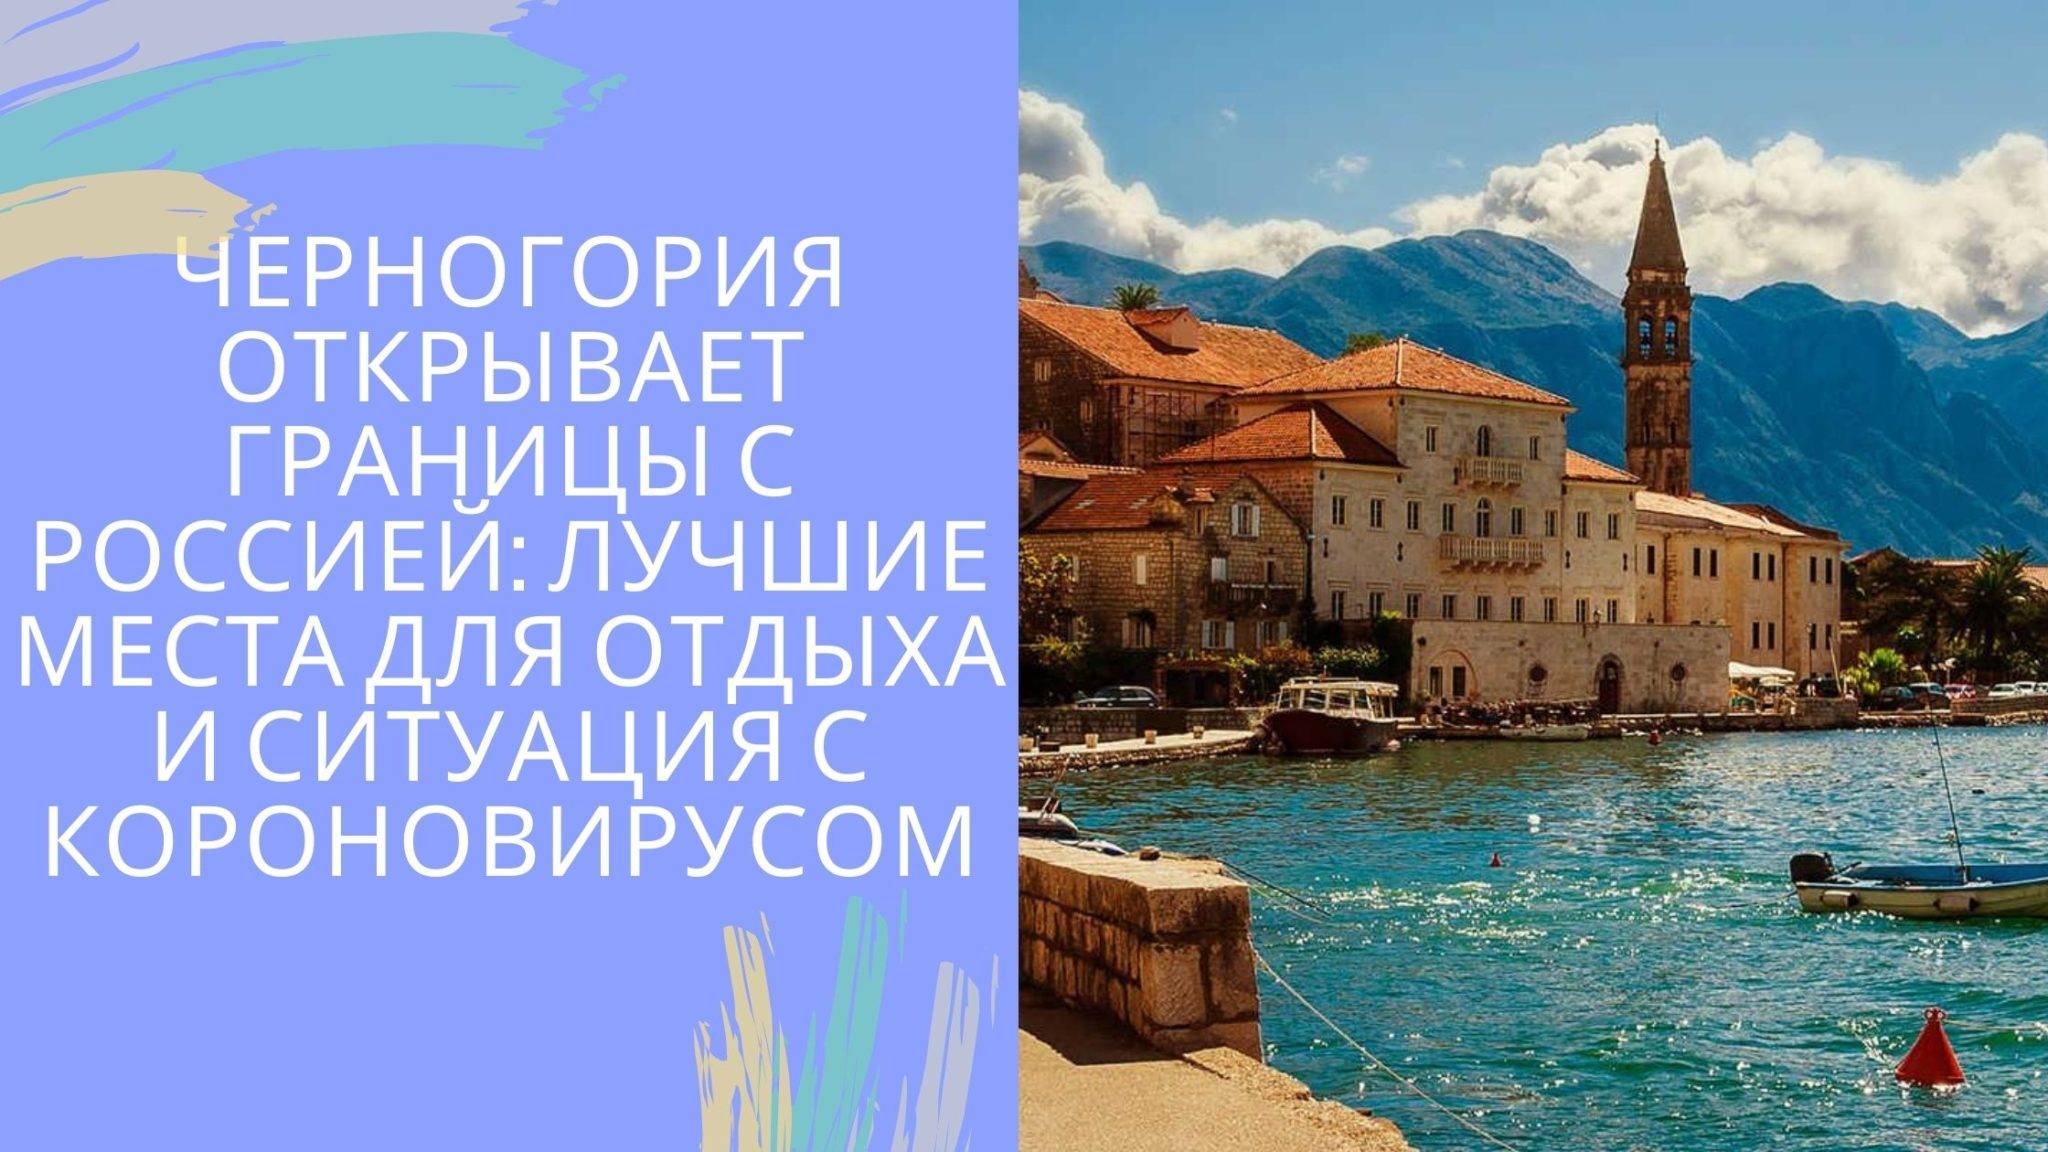 Преимущества и недостатки жизни русских мигрантов в черногории в 2019 году